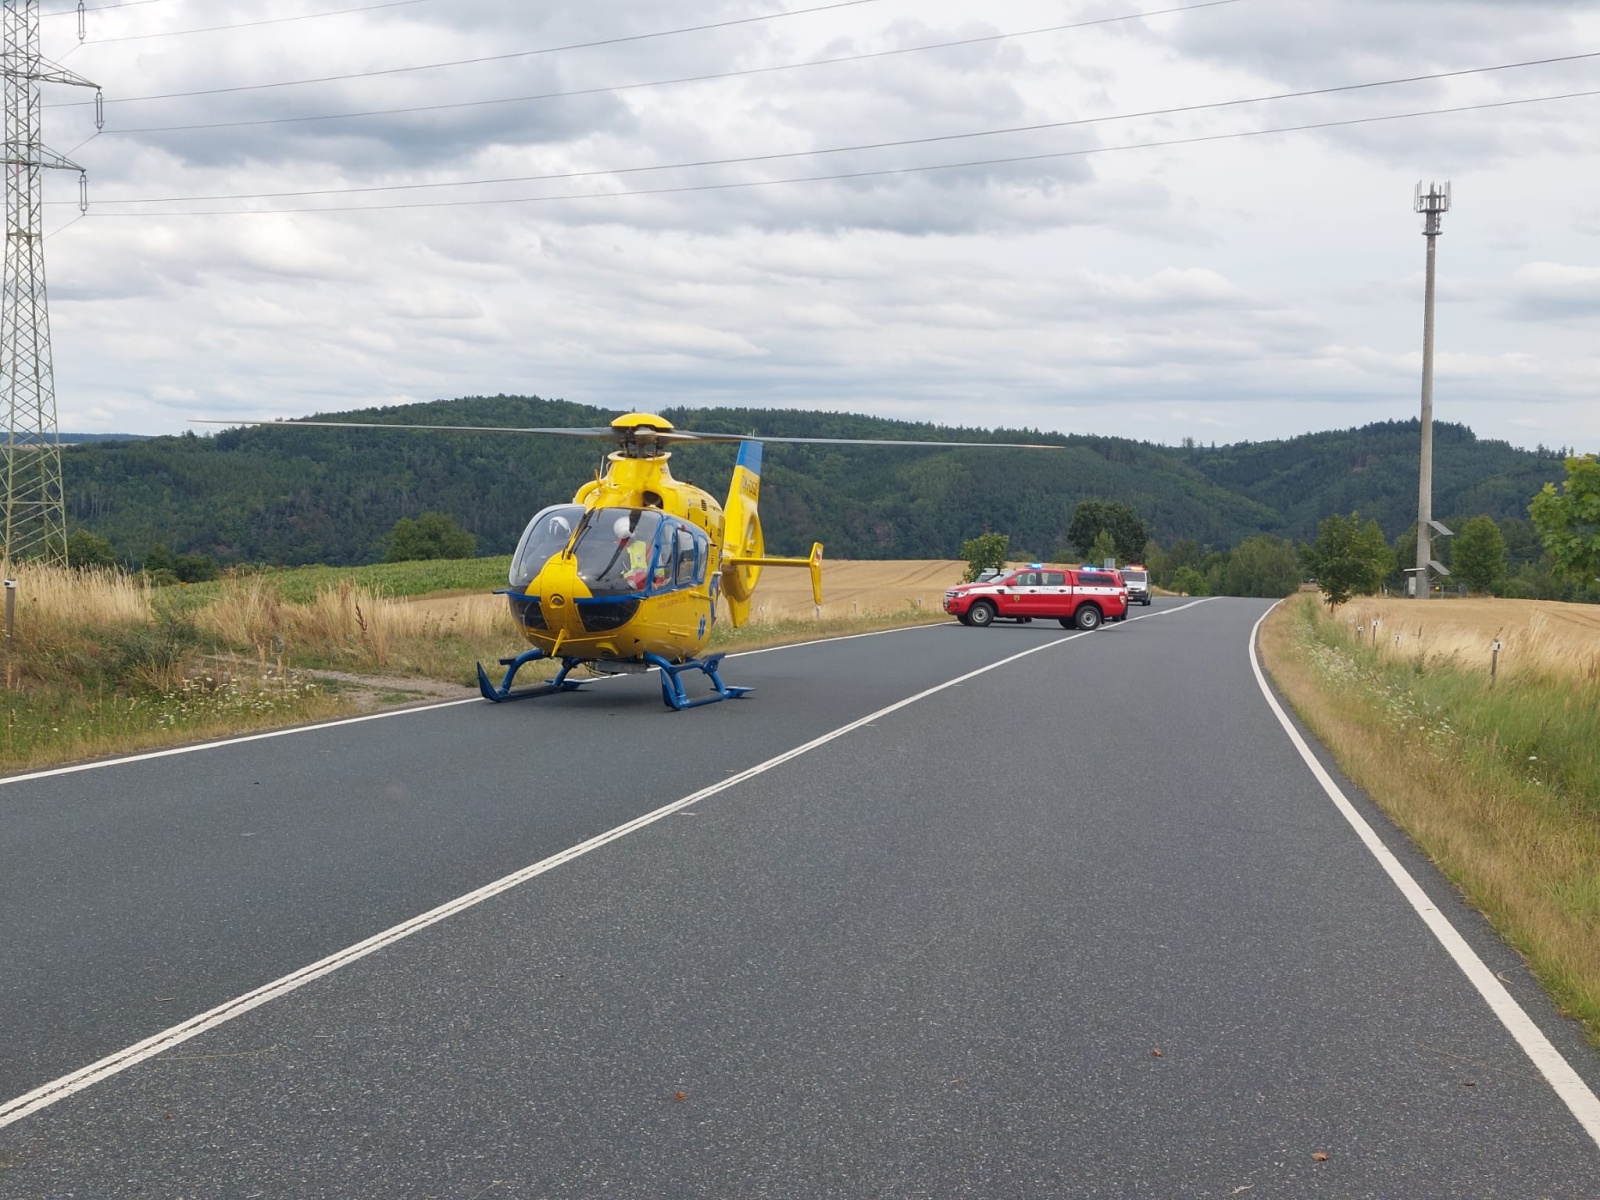 006-Tragická nehoda dvou vozidel poblíž Kácova na Kutnohorsk.jpeg